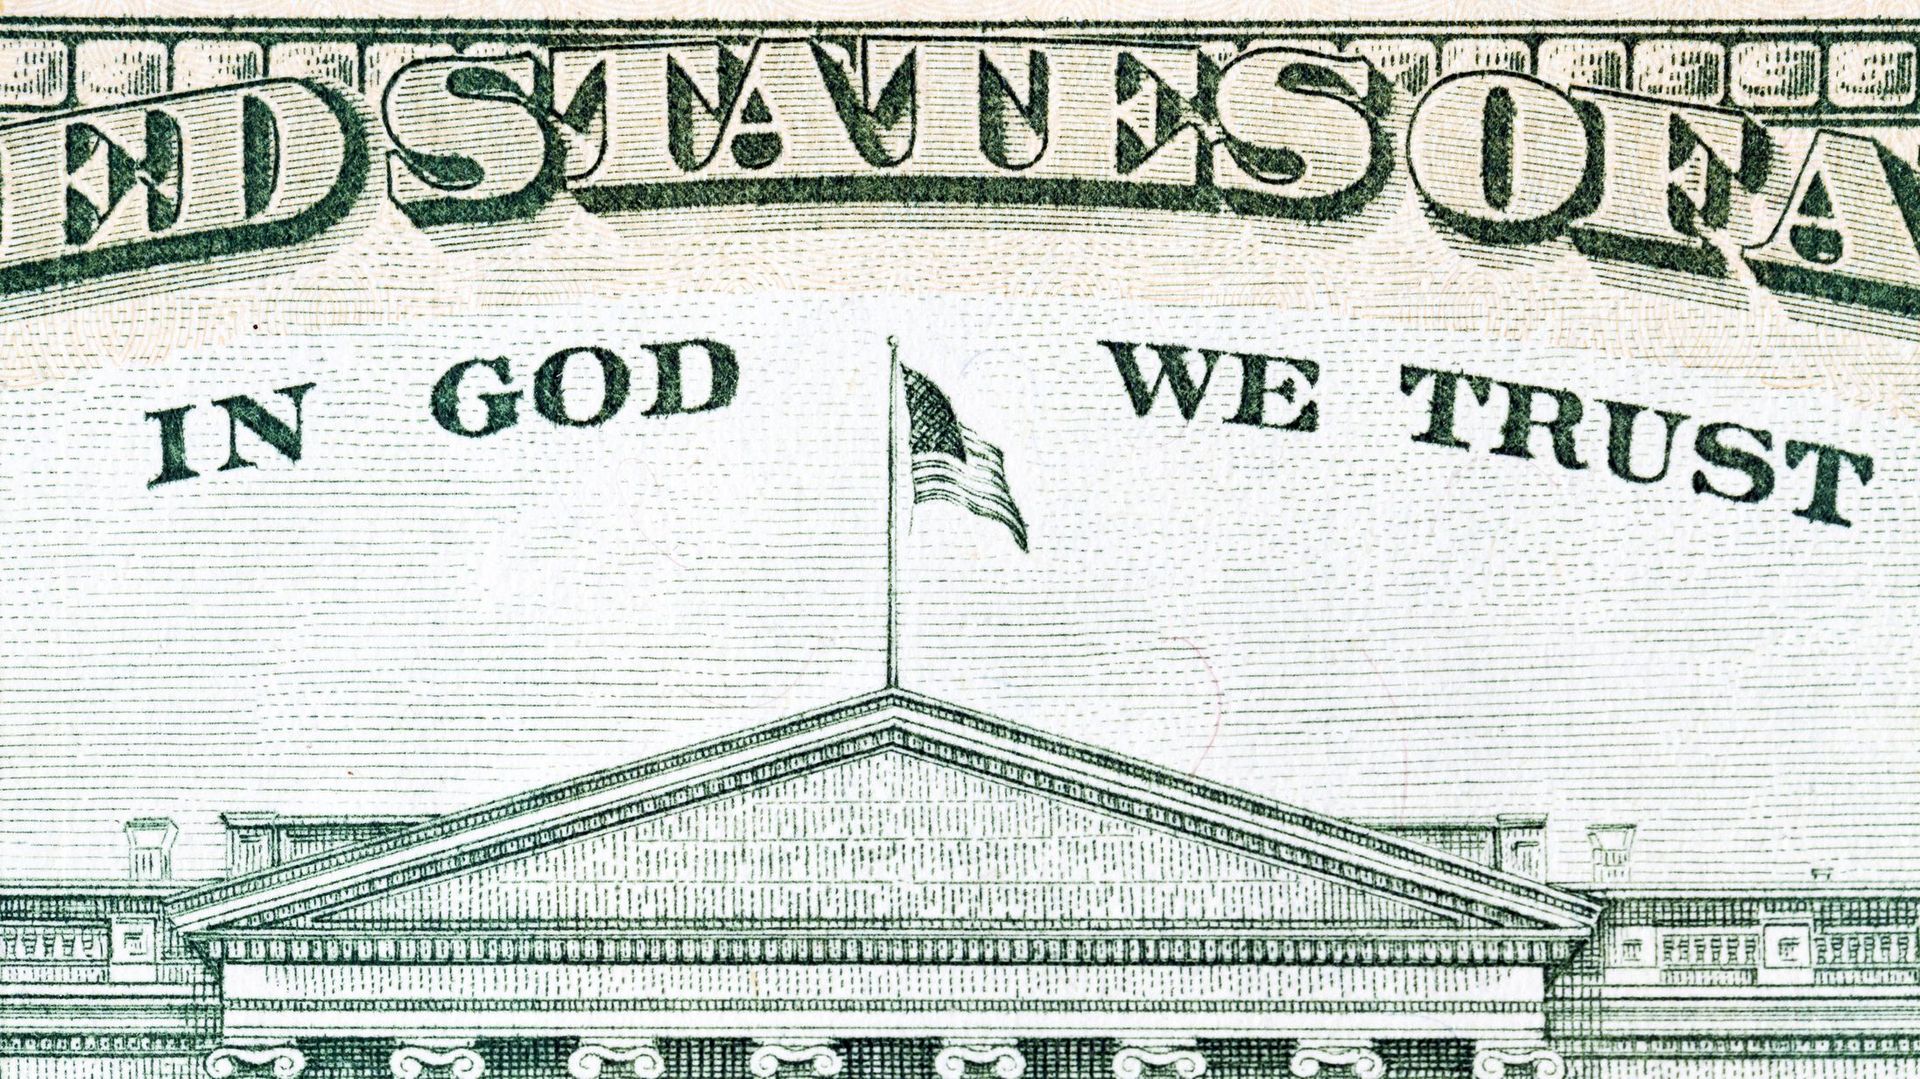 Les Américains résument bien le rapport entre Dieu et l’argent, dit l'historienne Anne Morelli